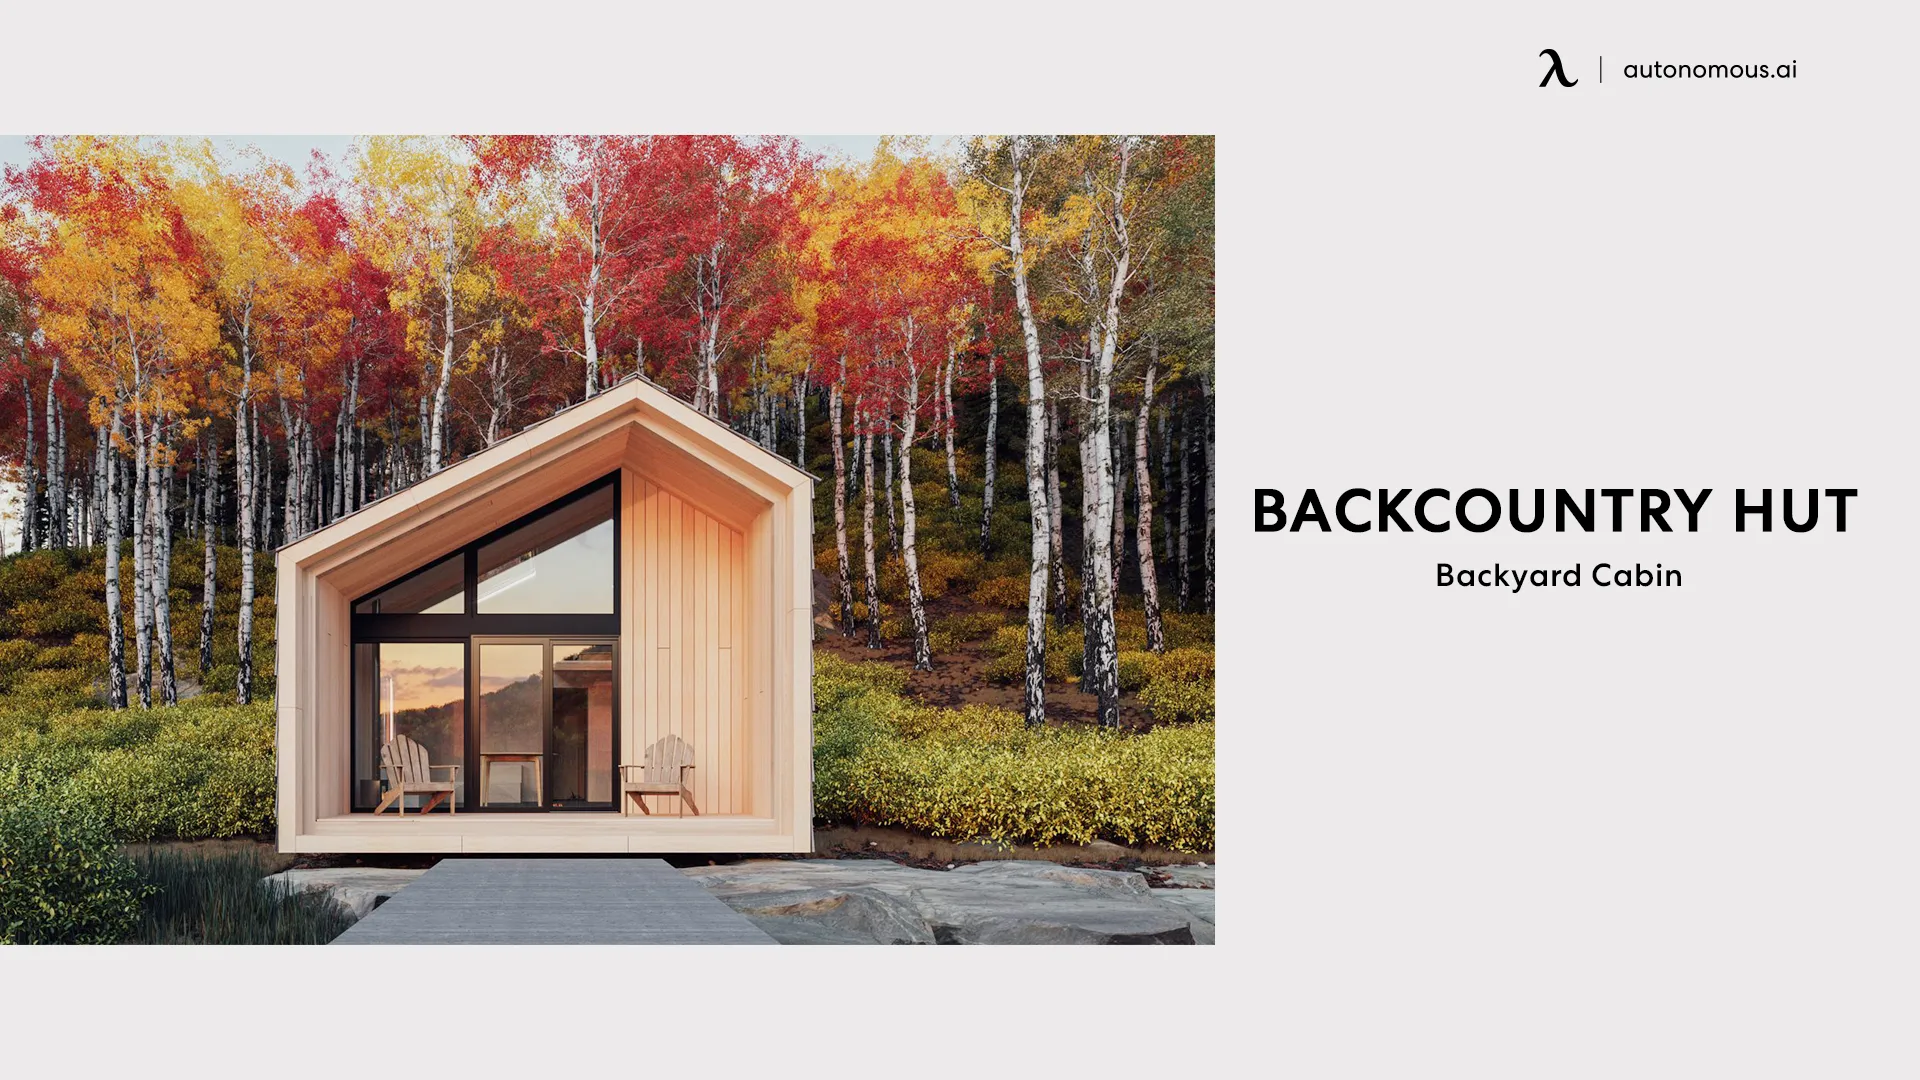 Backcountry Hut Company’s Cabin